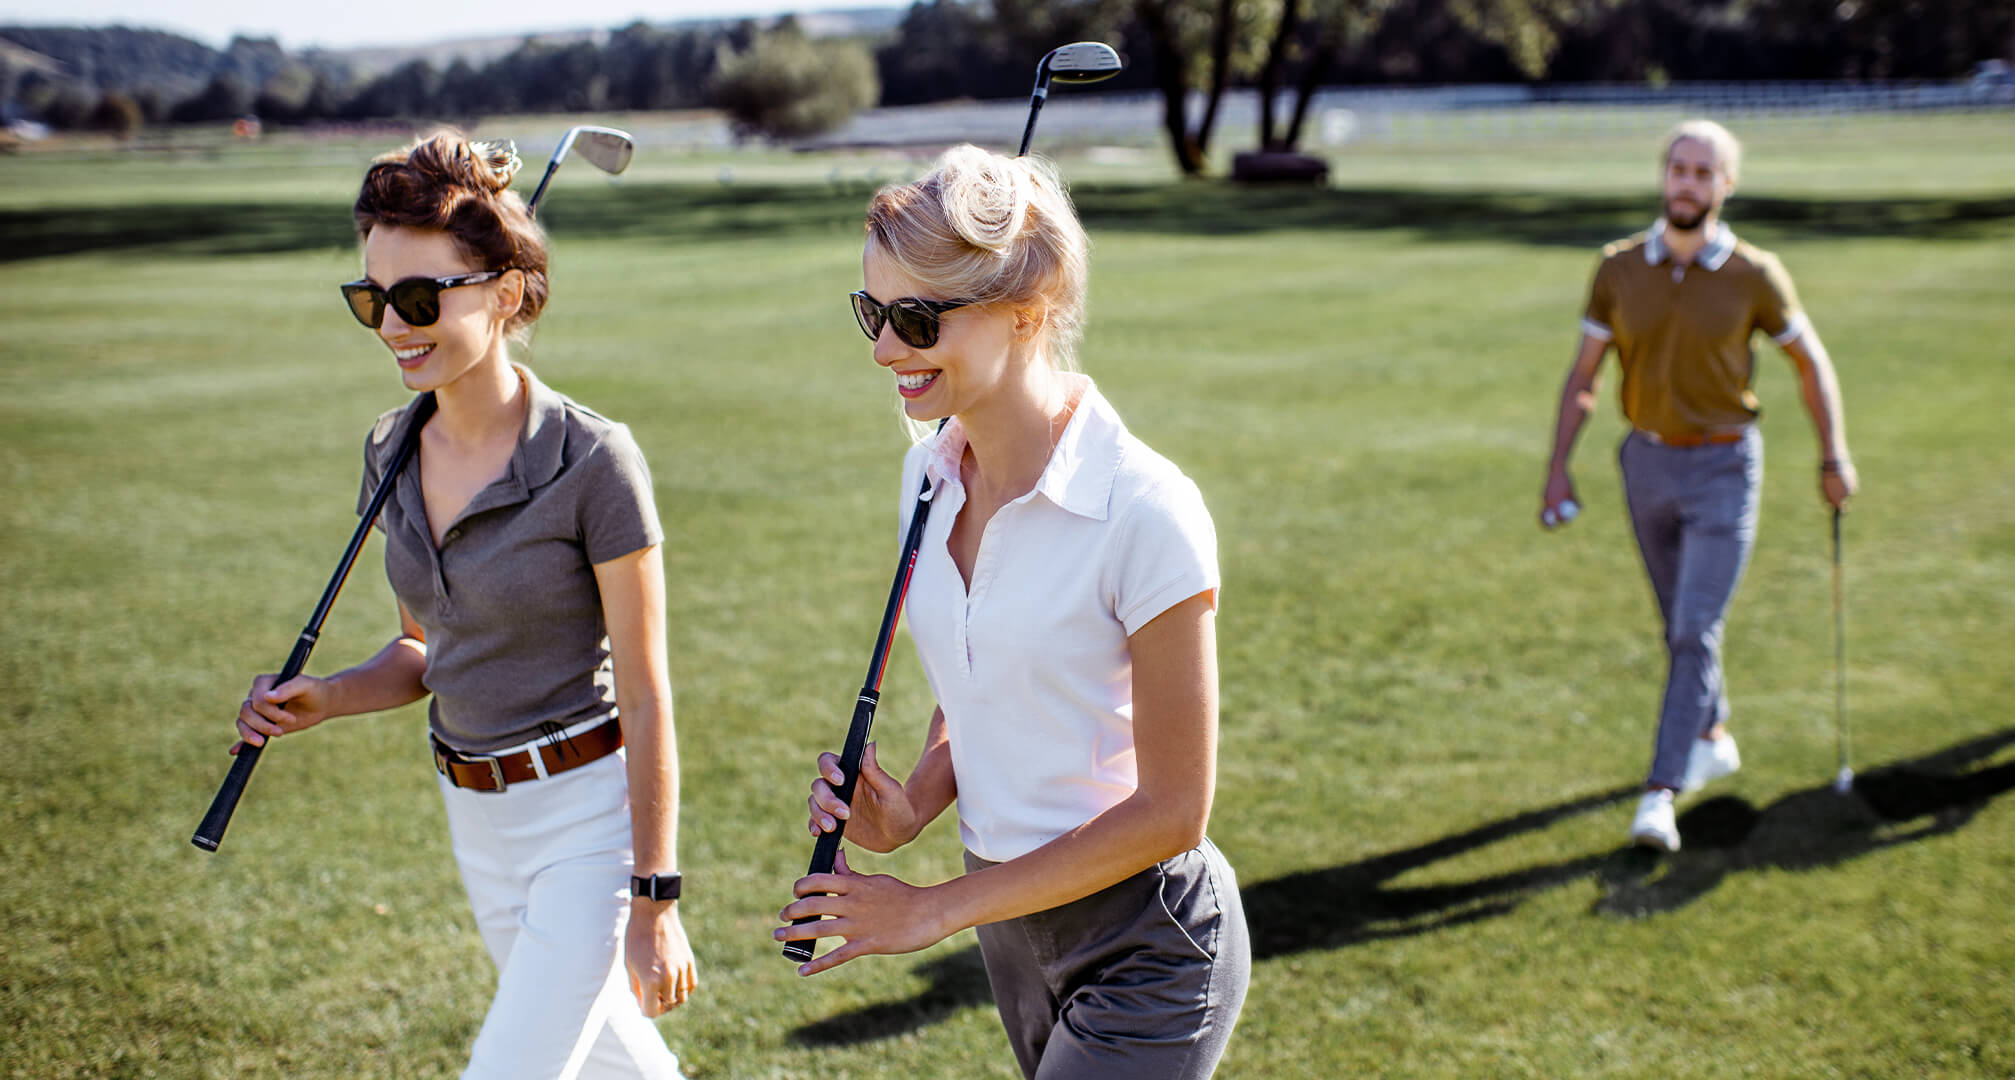 due persone che giocano a golf indossando gli occhiali da sole